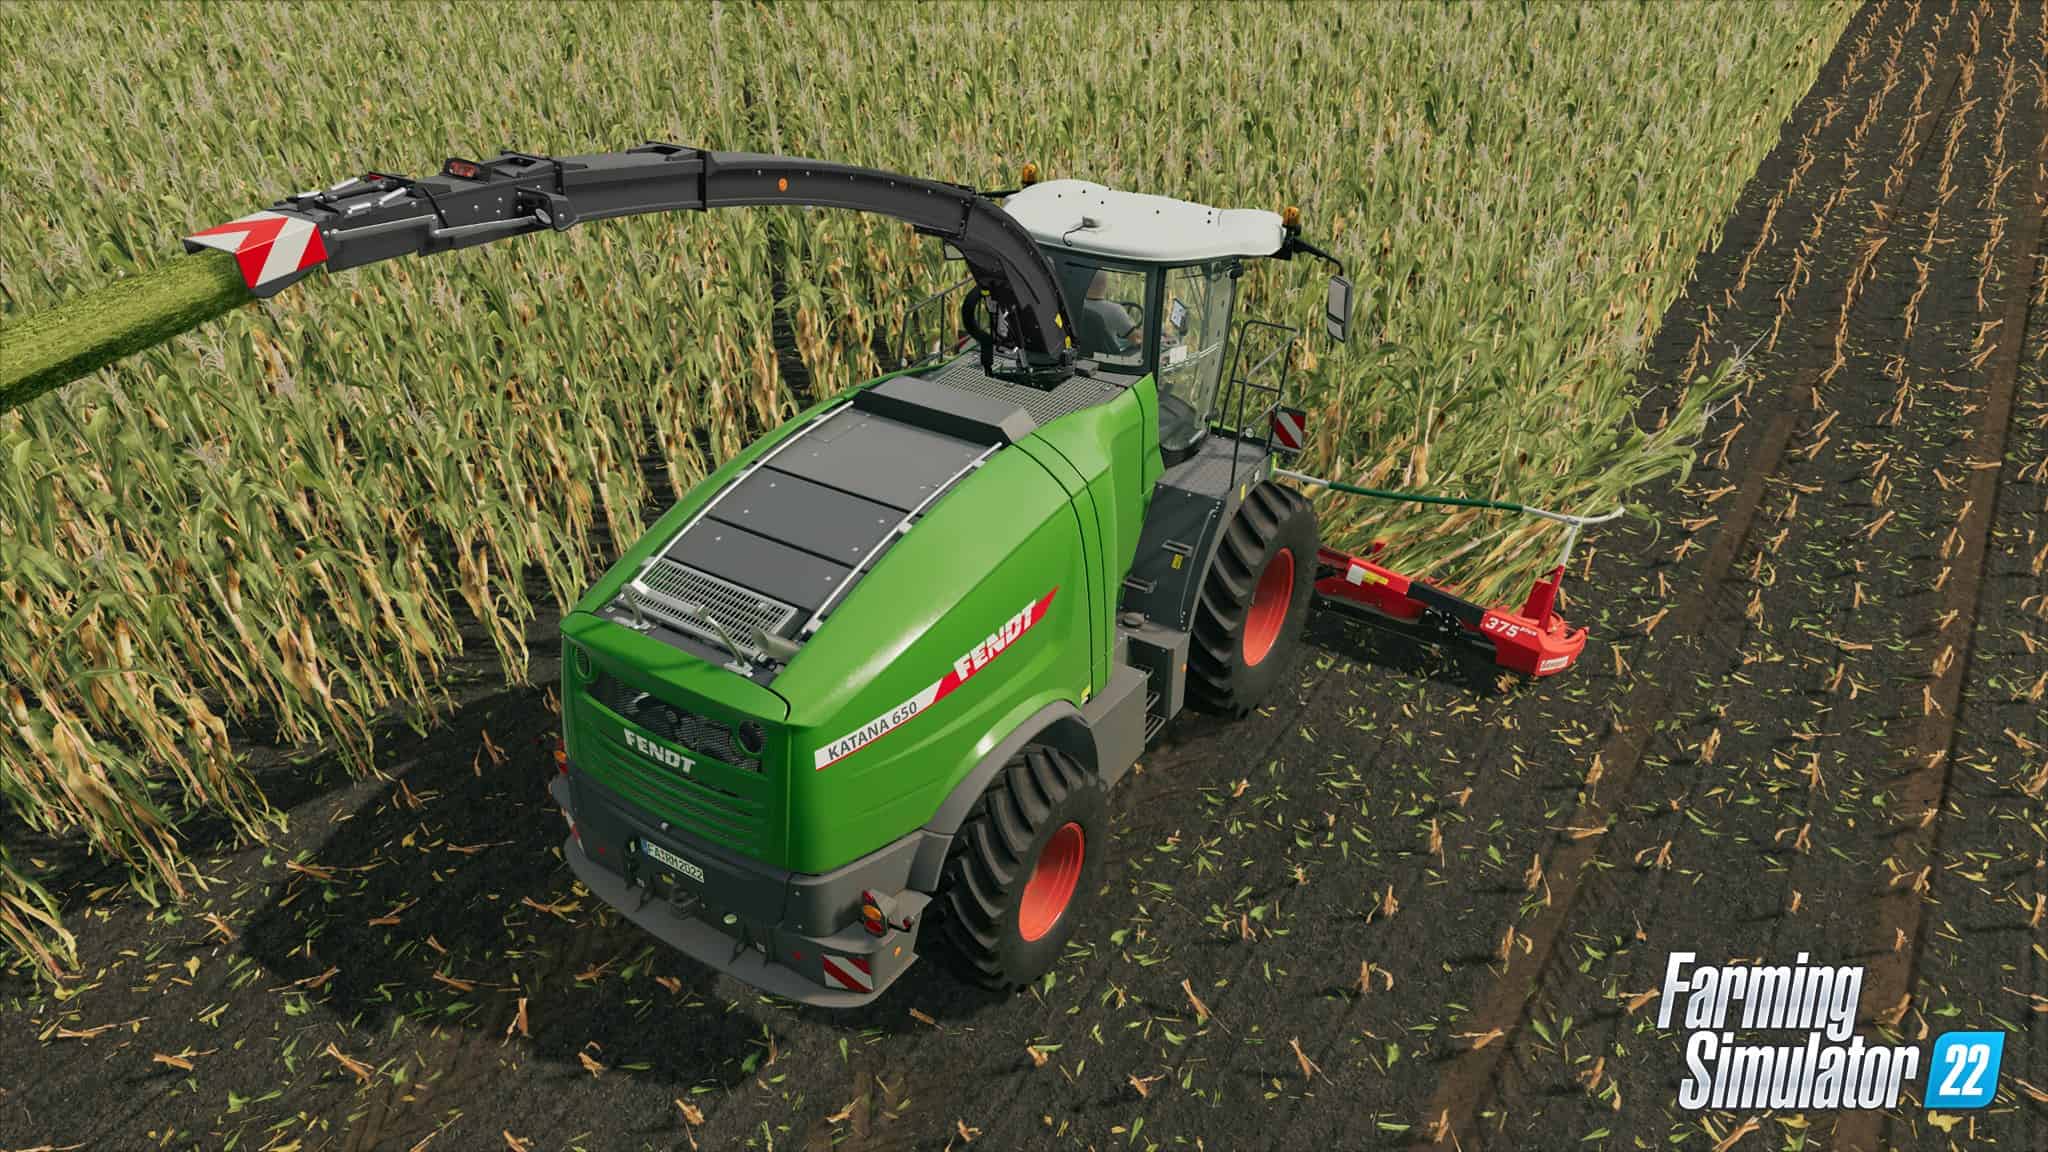 modhub farming simulator 22